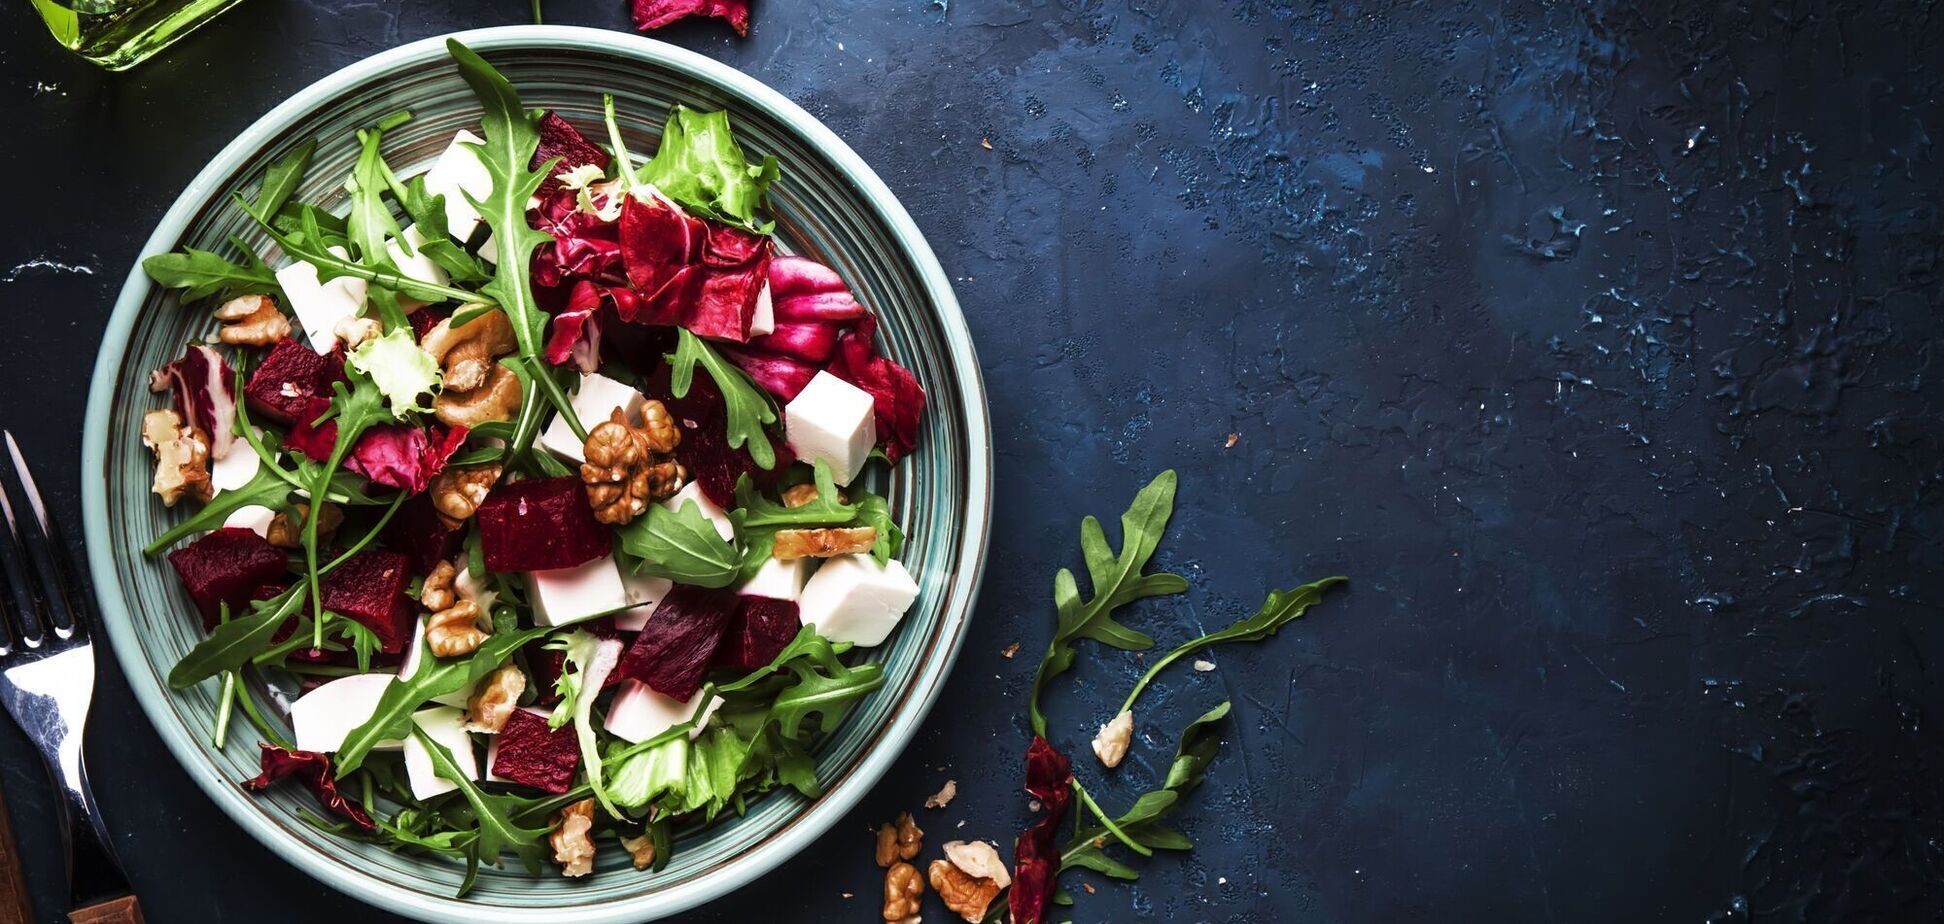 Смачний салат з овочів без майонезу: потрібно їсти саме навесні